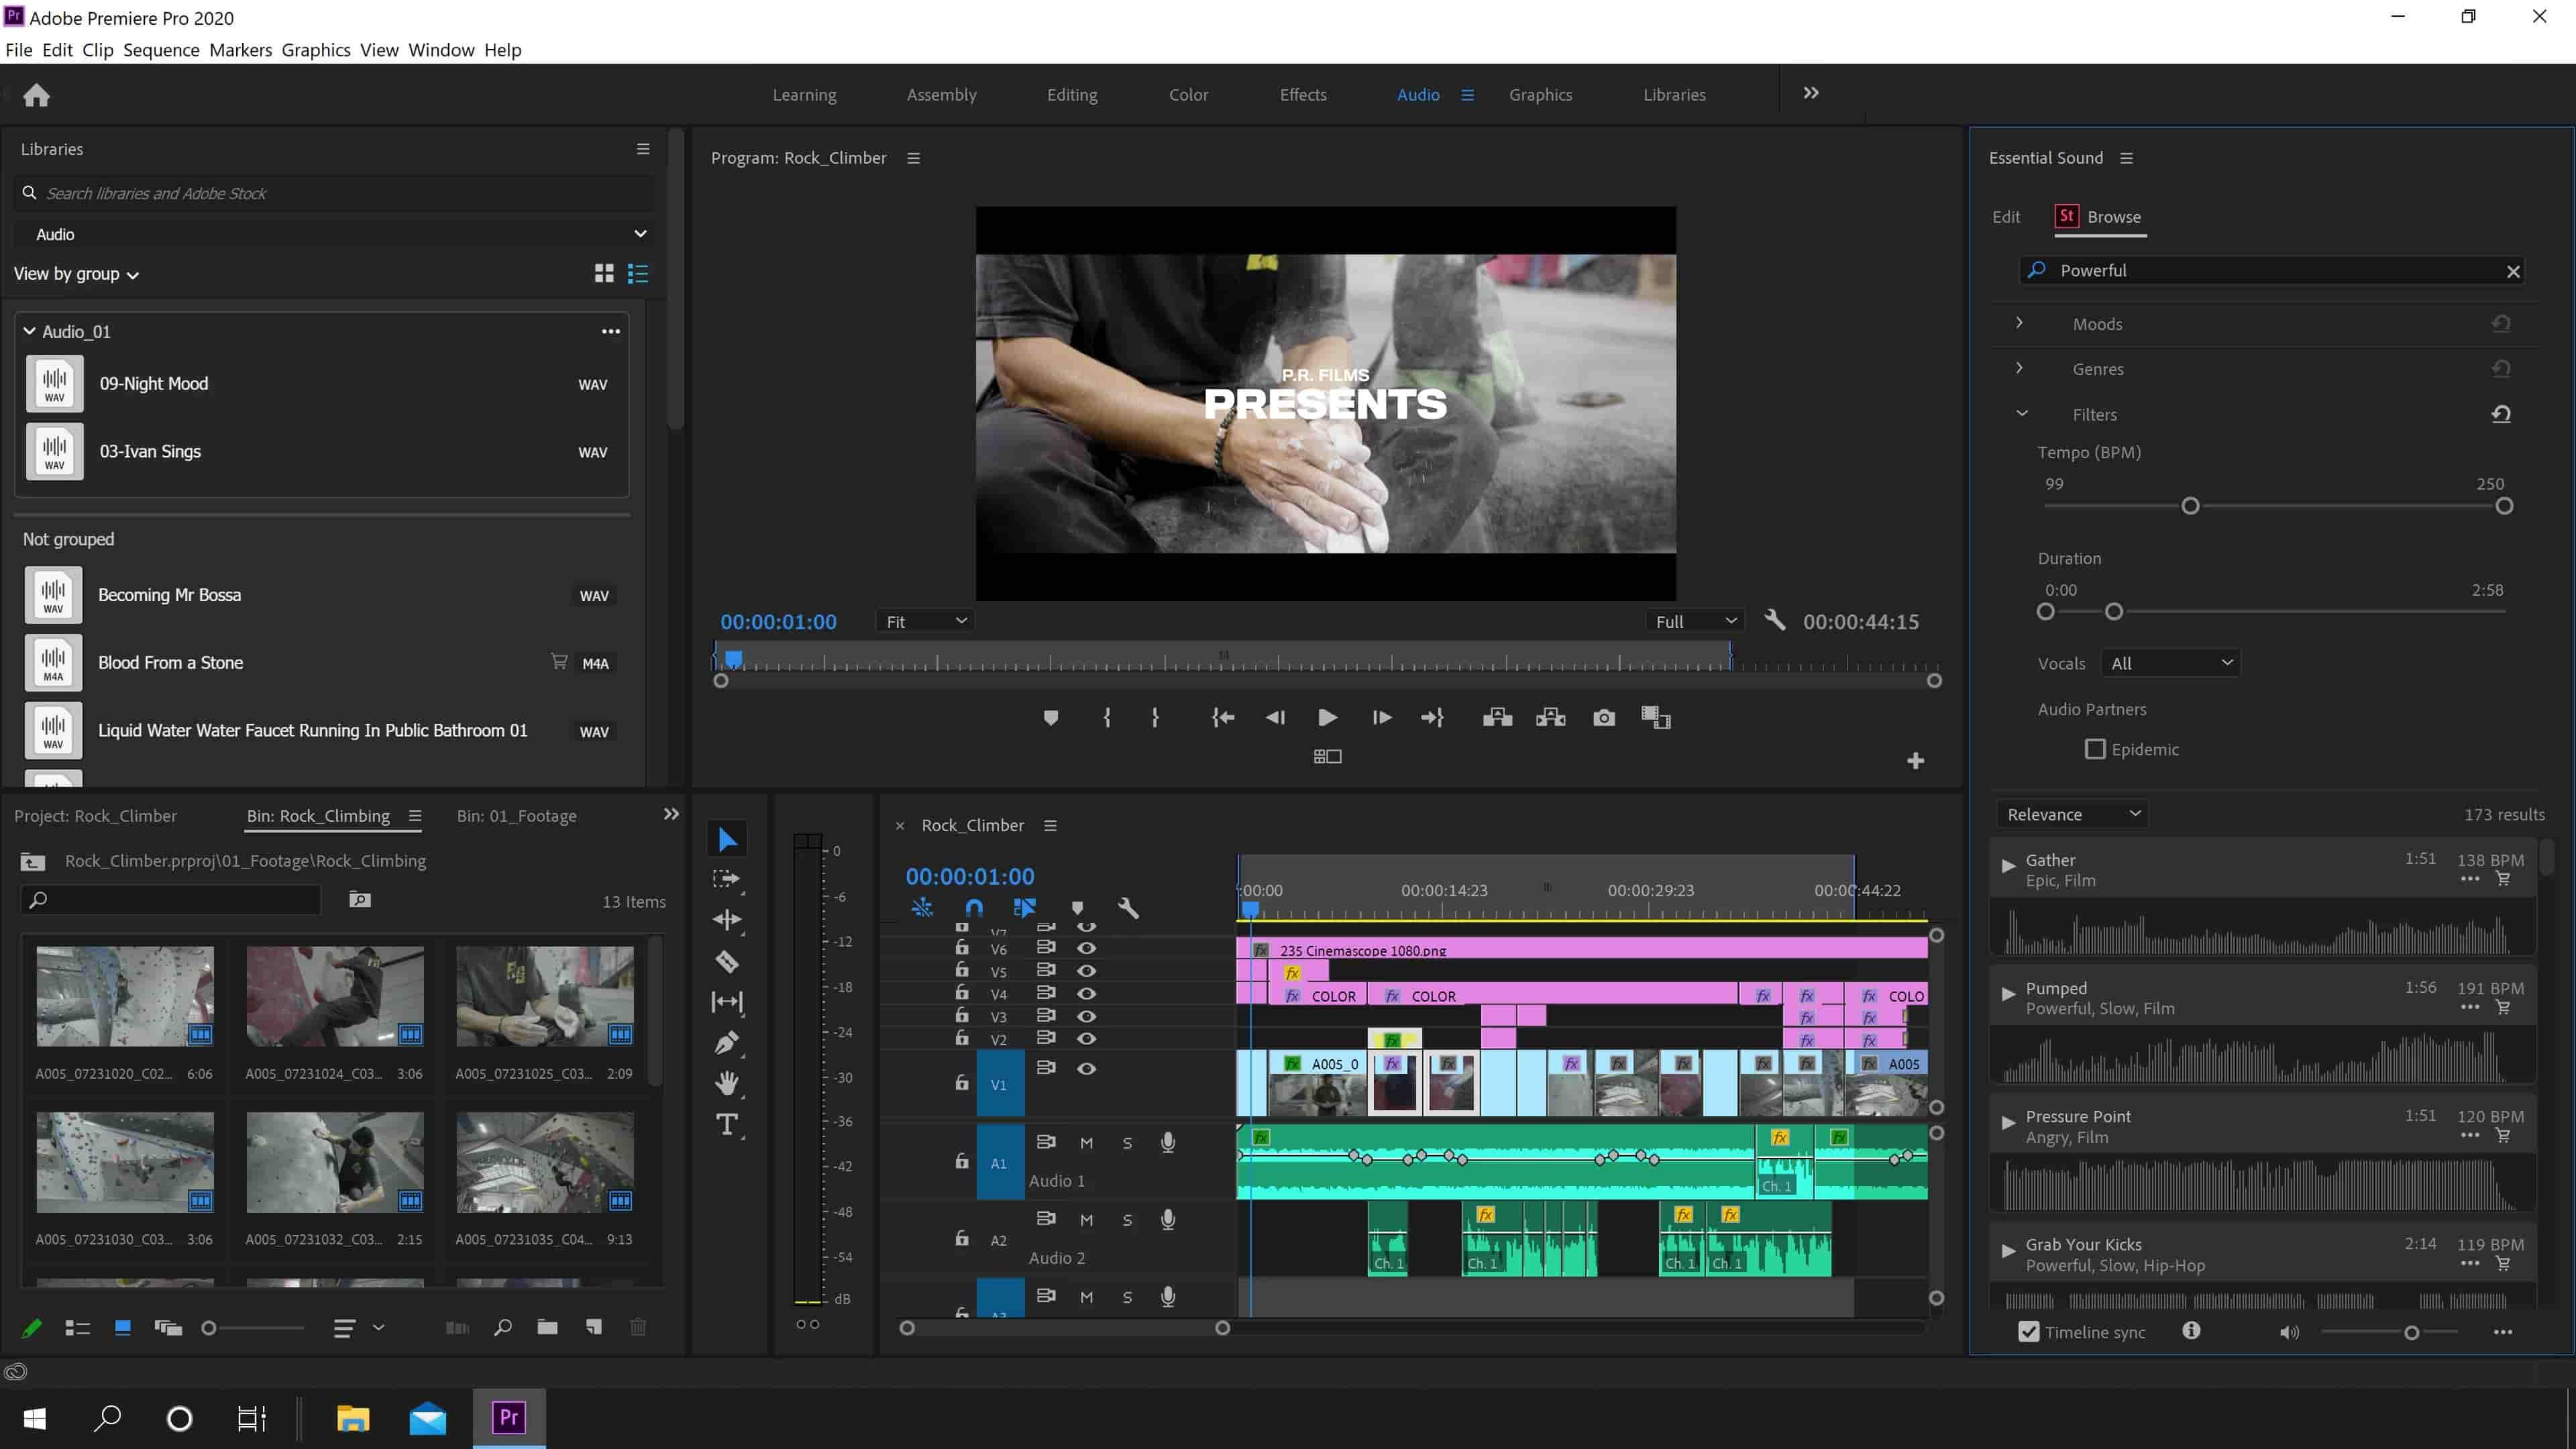 Pelatihan Video Editing dengan Premiere Pro, After Effects, dan Animate cover